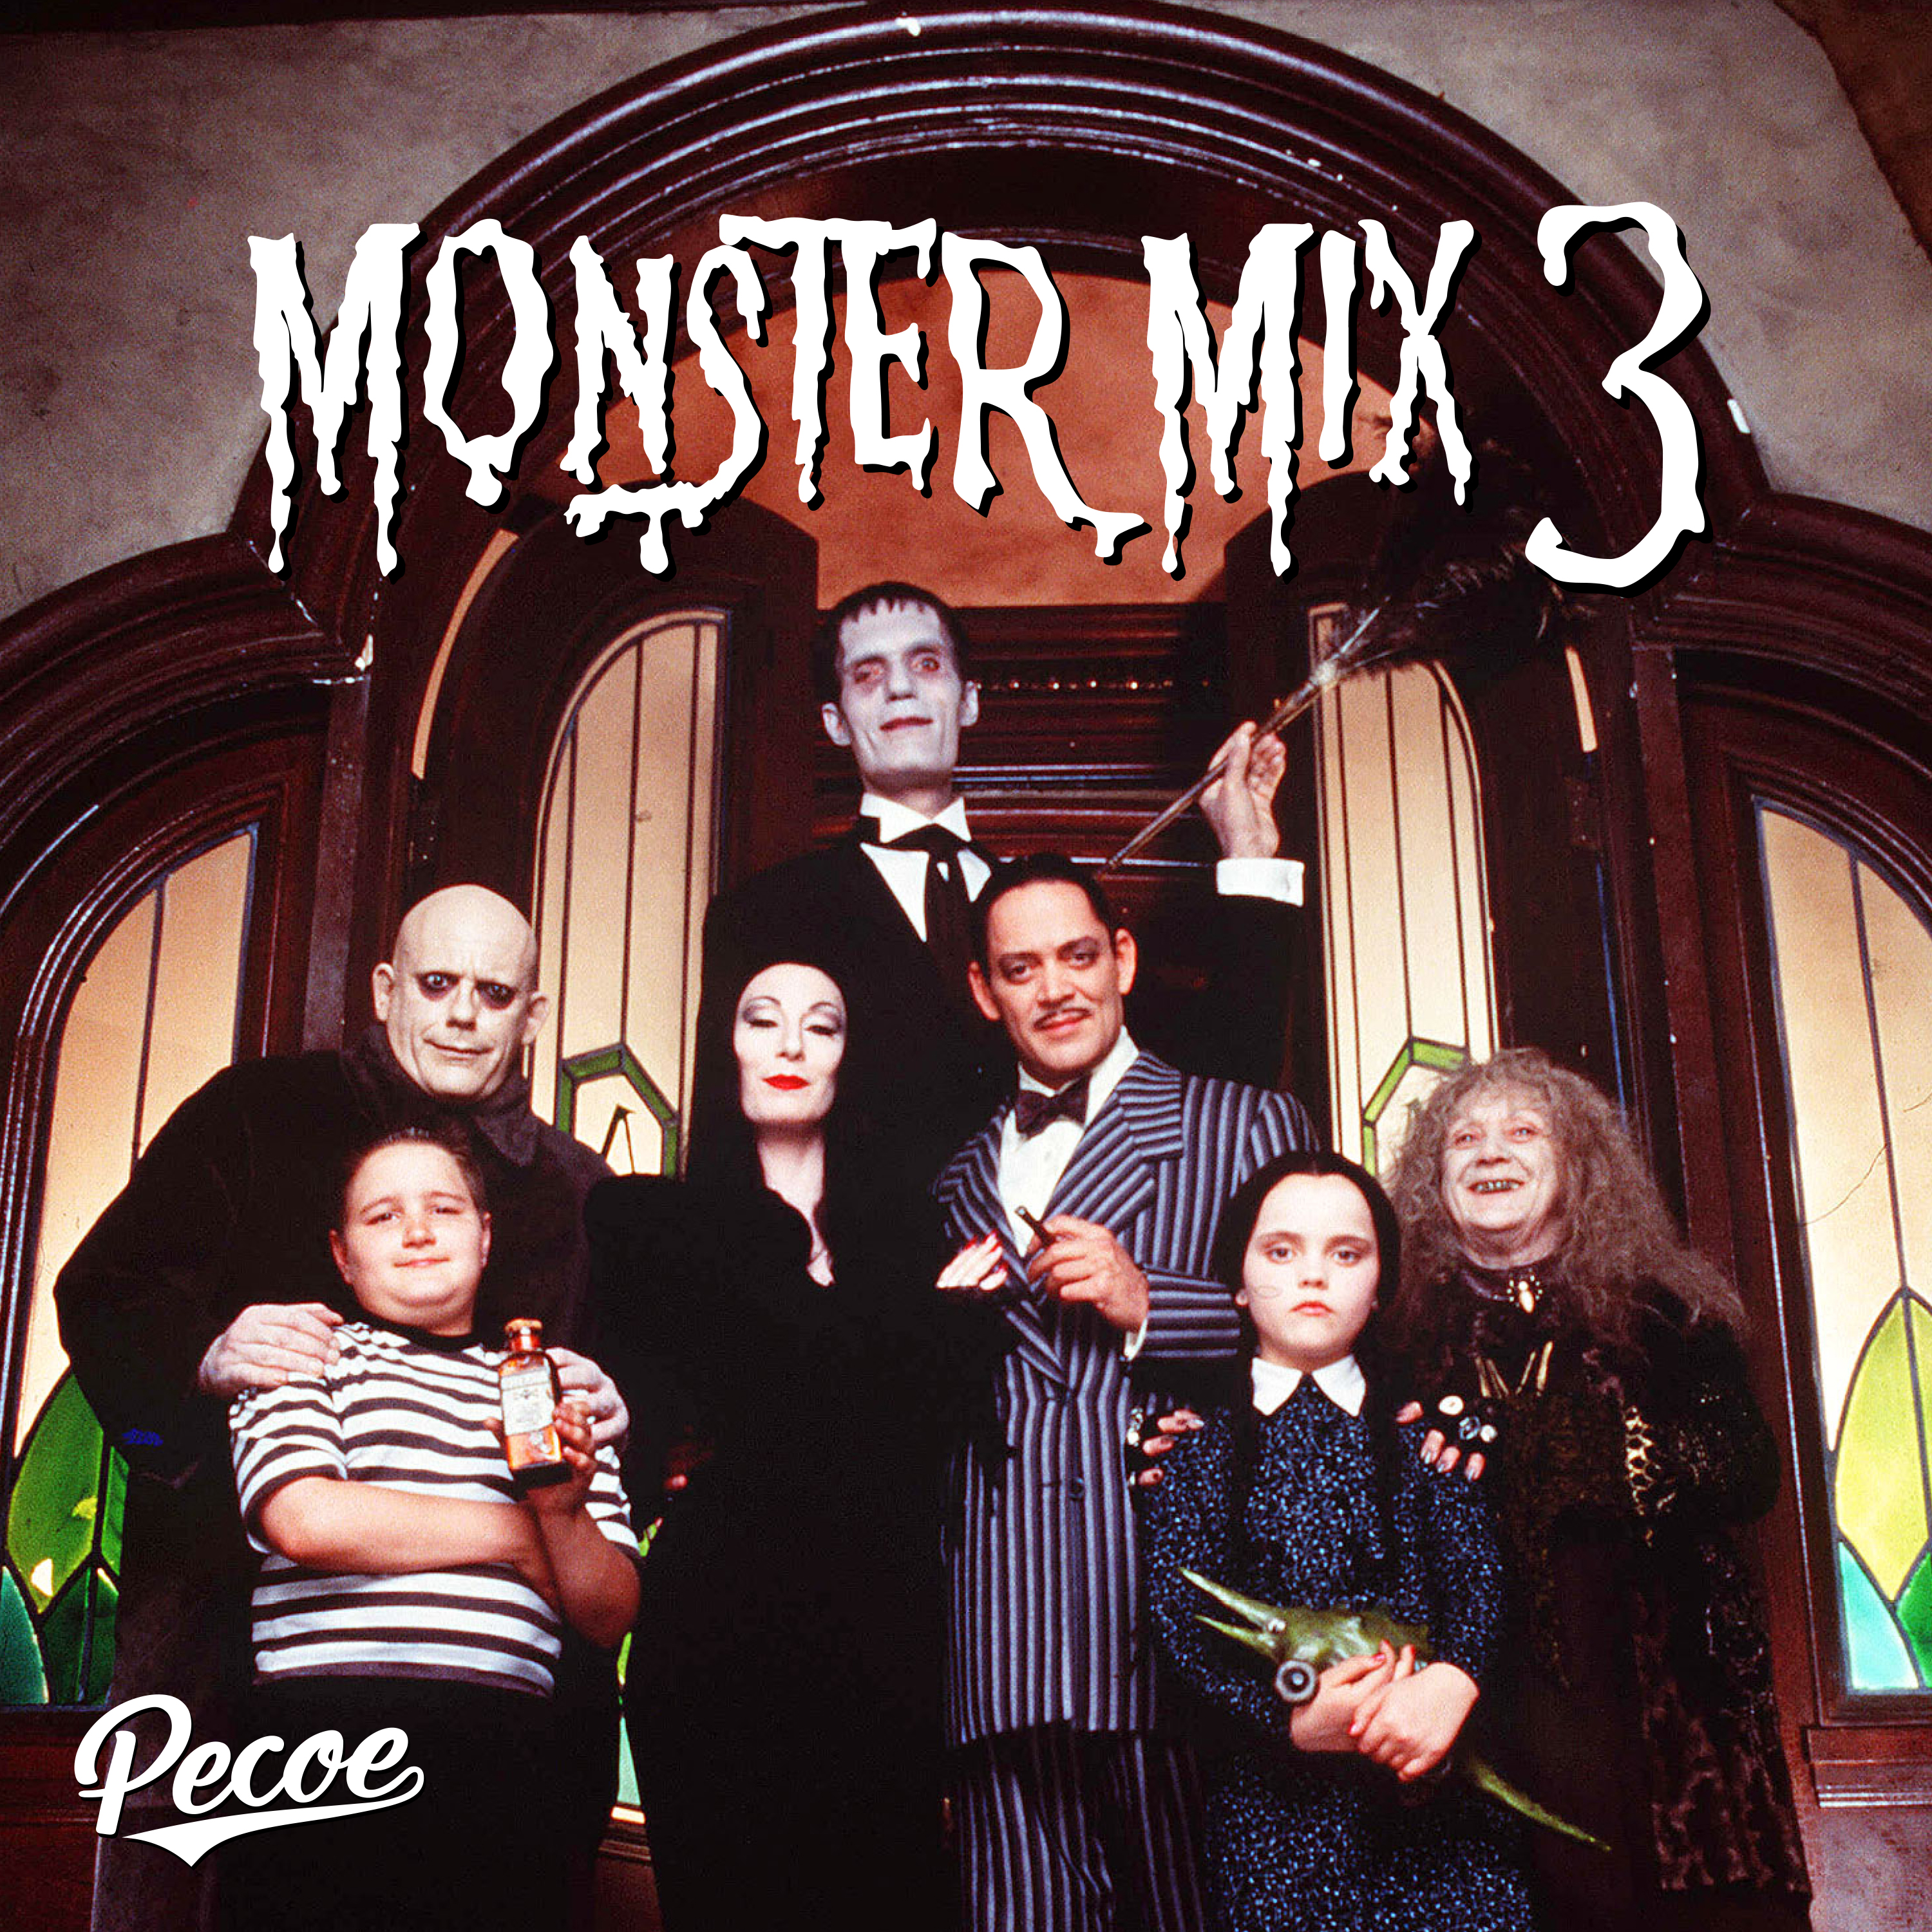 Pobierać Pecoe - Monster Mix 3